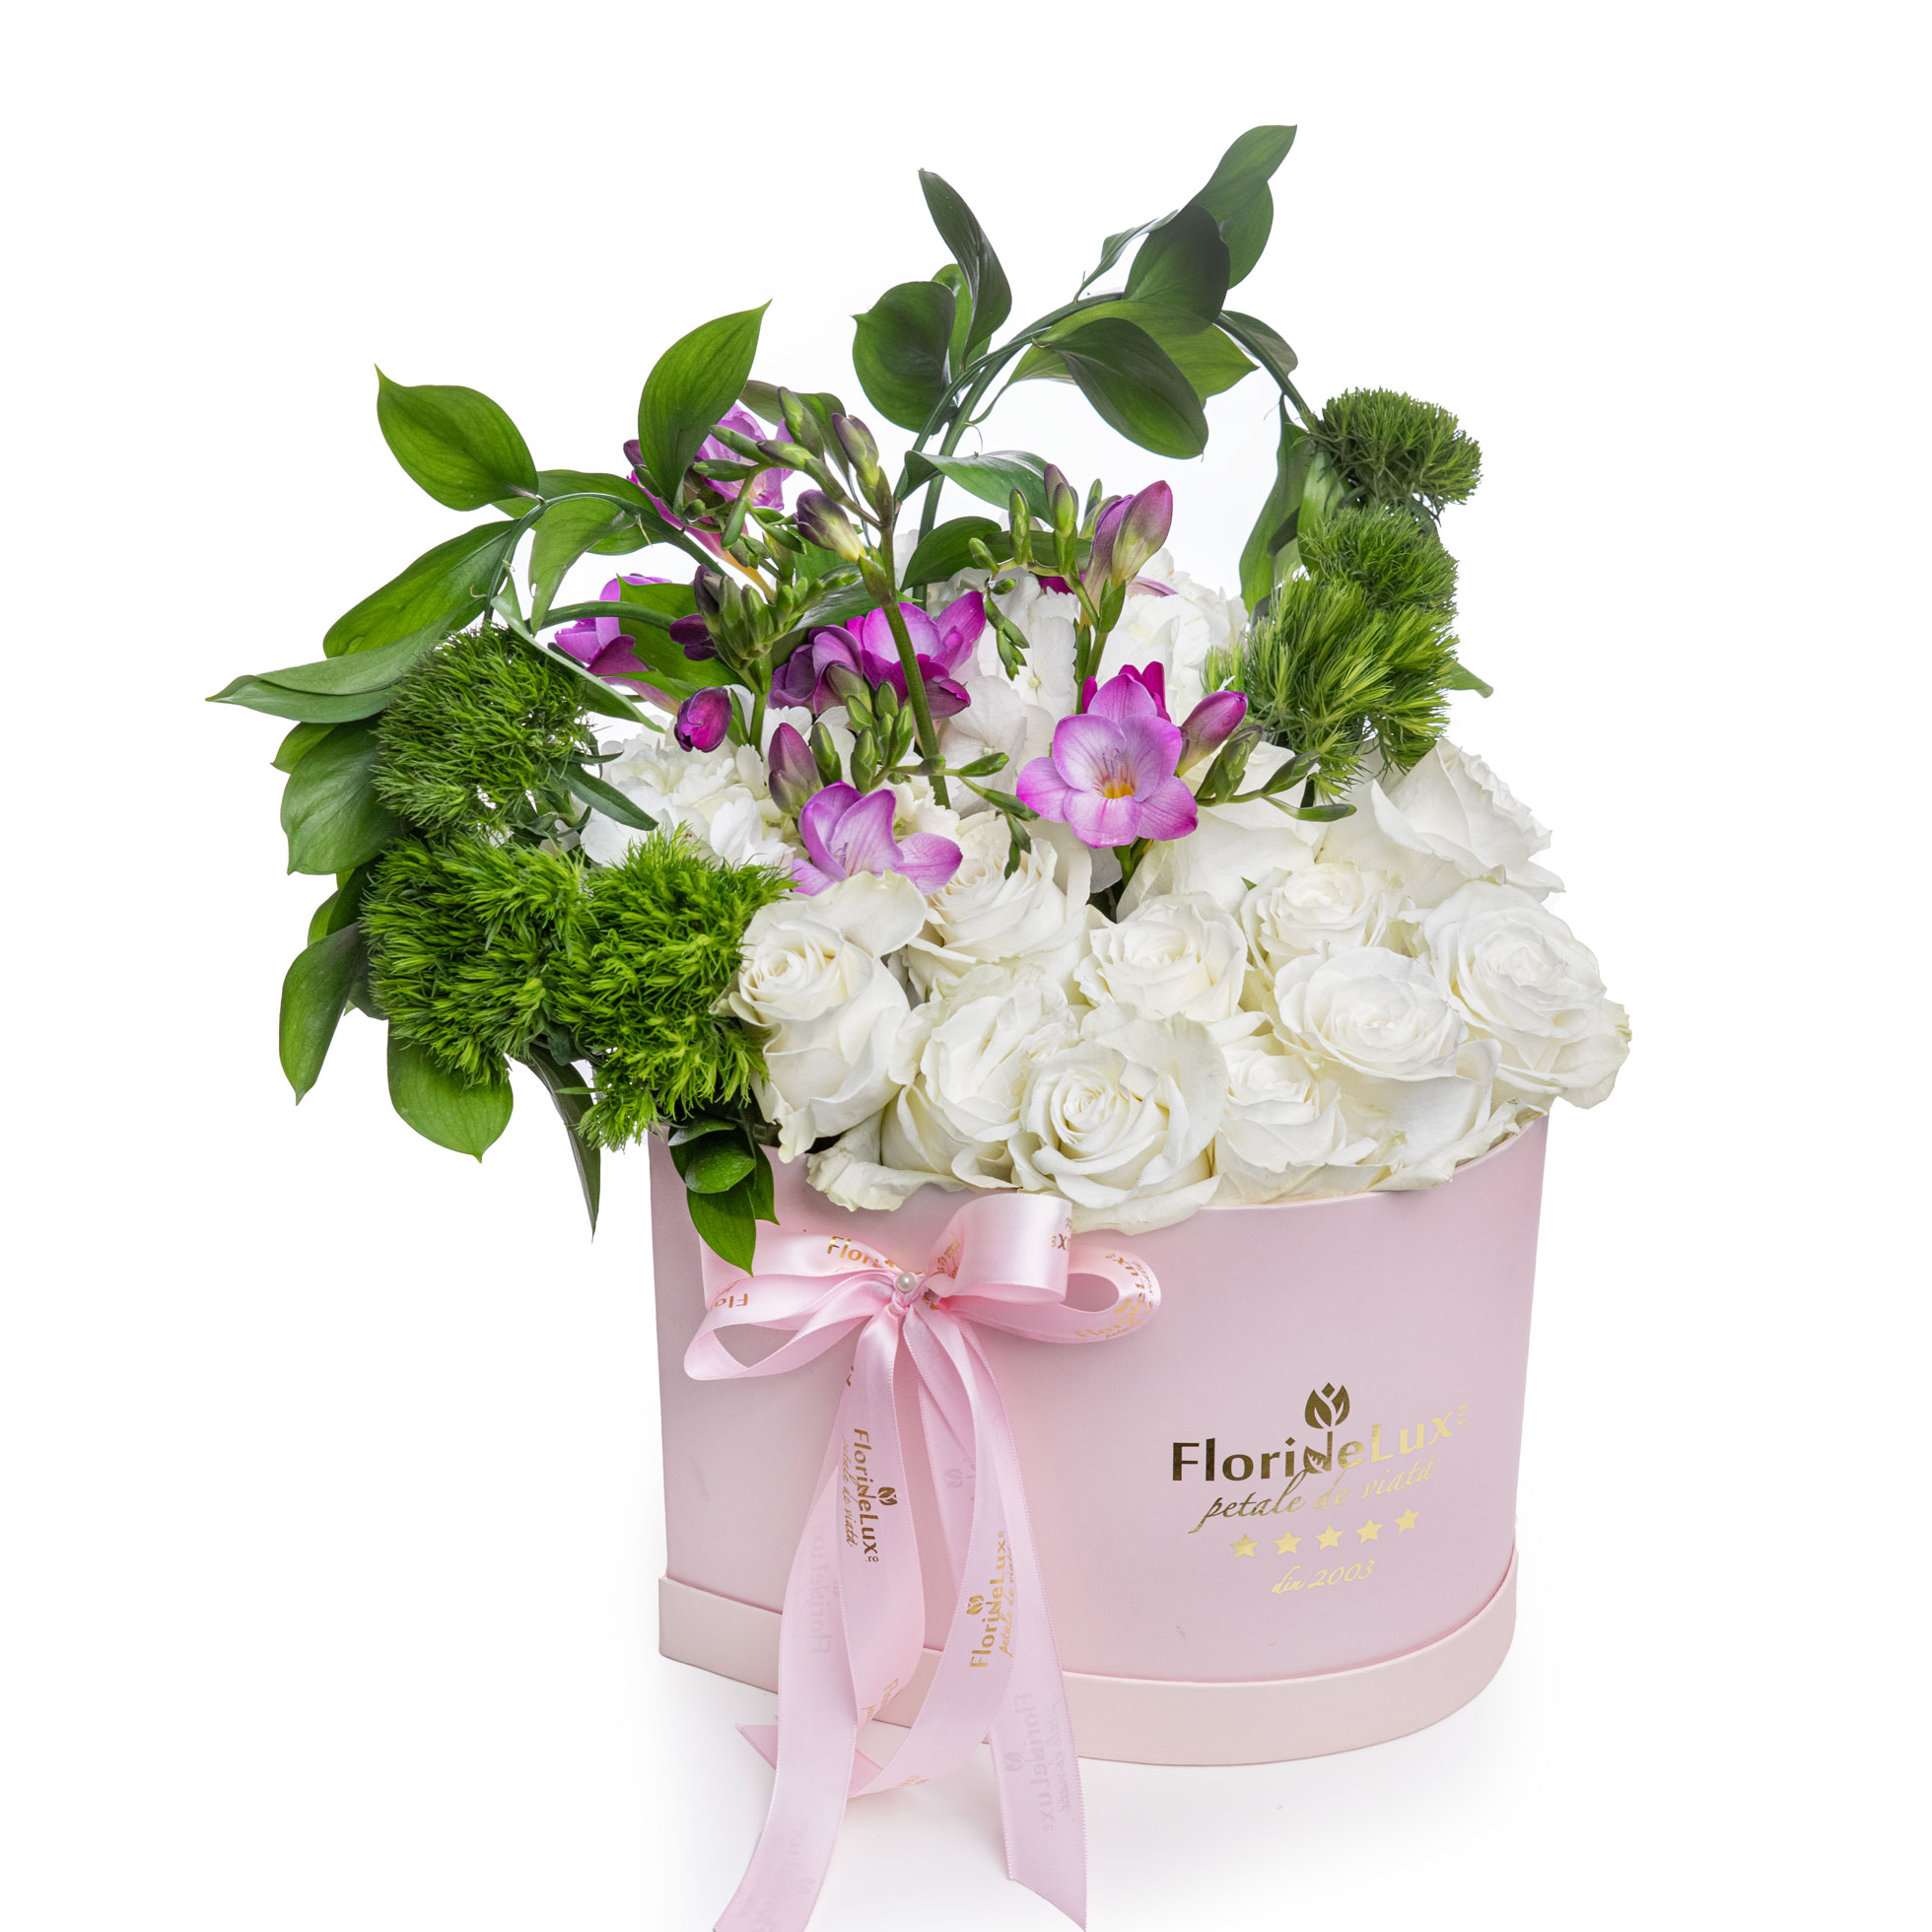 Cutie inima roz cu flori albe Honest Love